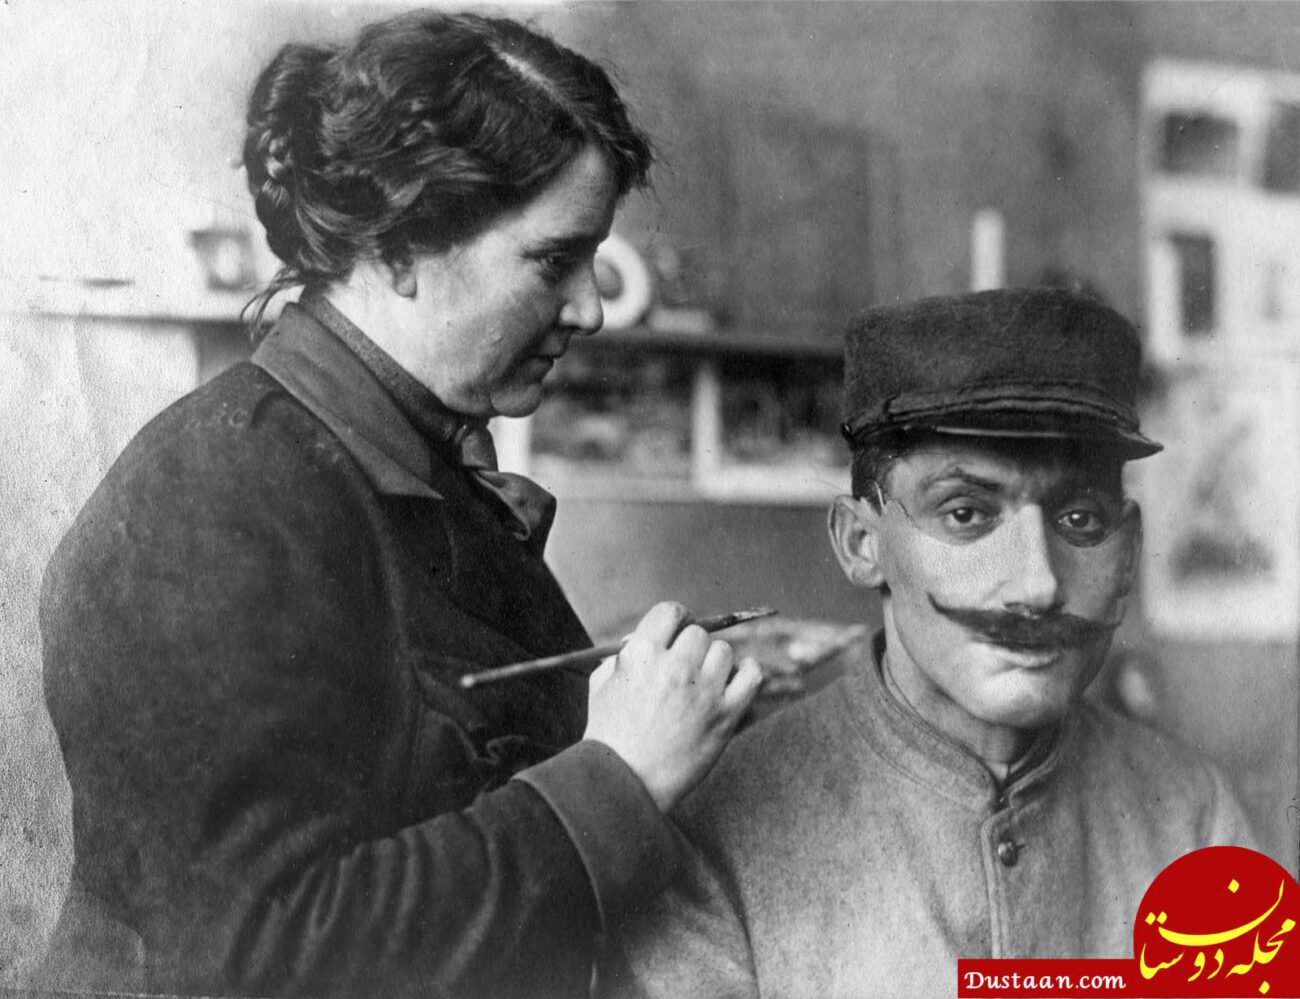 سال‌های جنگ جهانی اول: ماسک‌هایی تقریبا طبیعی برای سربازانی که صورتشان به شدت زخمی شده بود، طراحی می‌شد. در اینجا زنی به خانم “لد” در حال رنگ‌آمیزی یک ماسک دیده می‌شود تا کاملا با صورت سرباز زخمی تطابق داشته باشد.